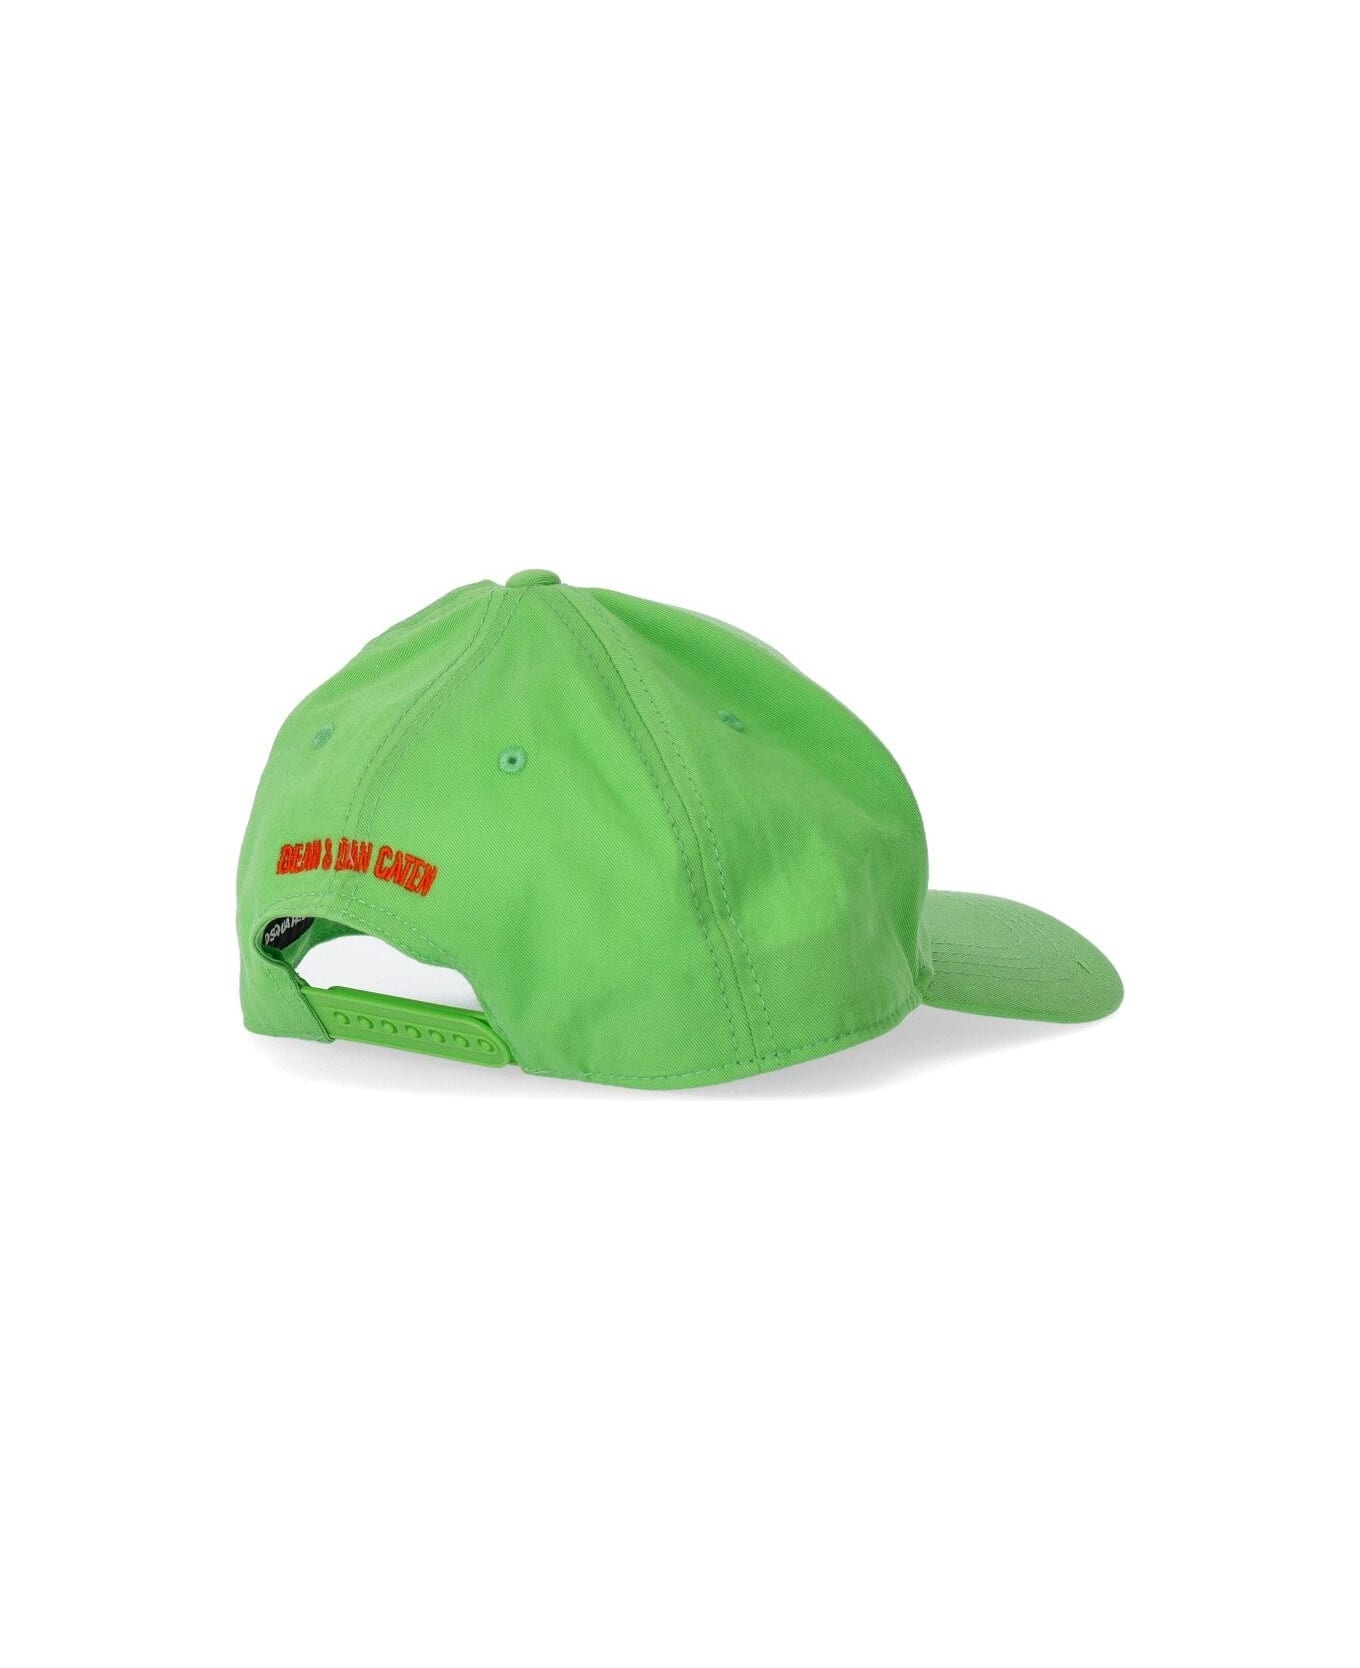 Dsquared2 Technicolor Acid Green Baseball Cap - 2